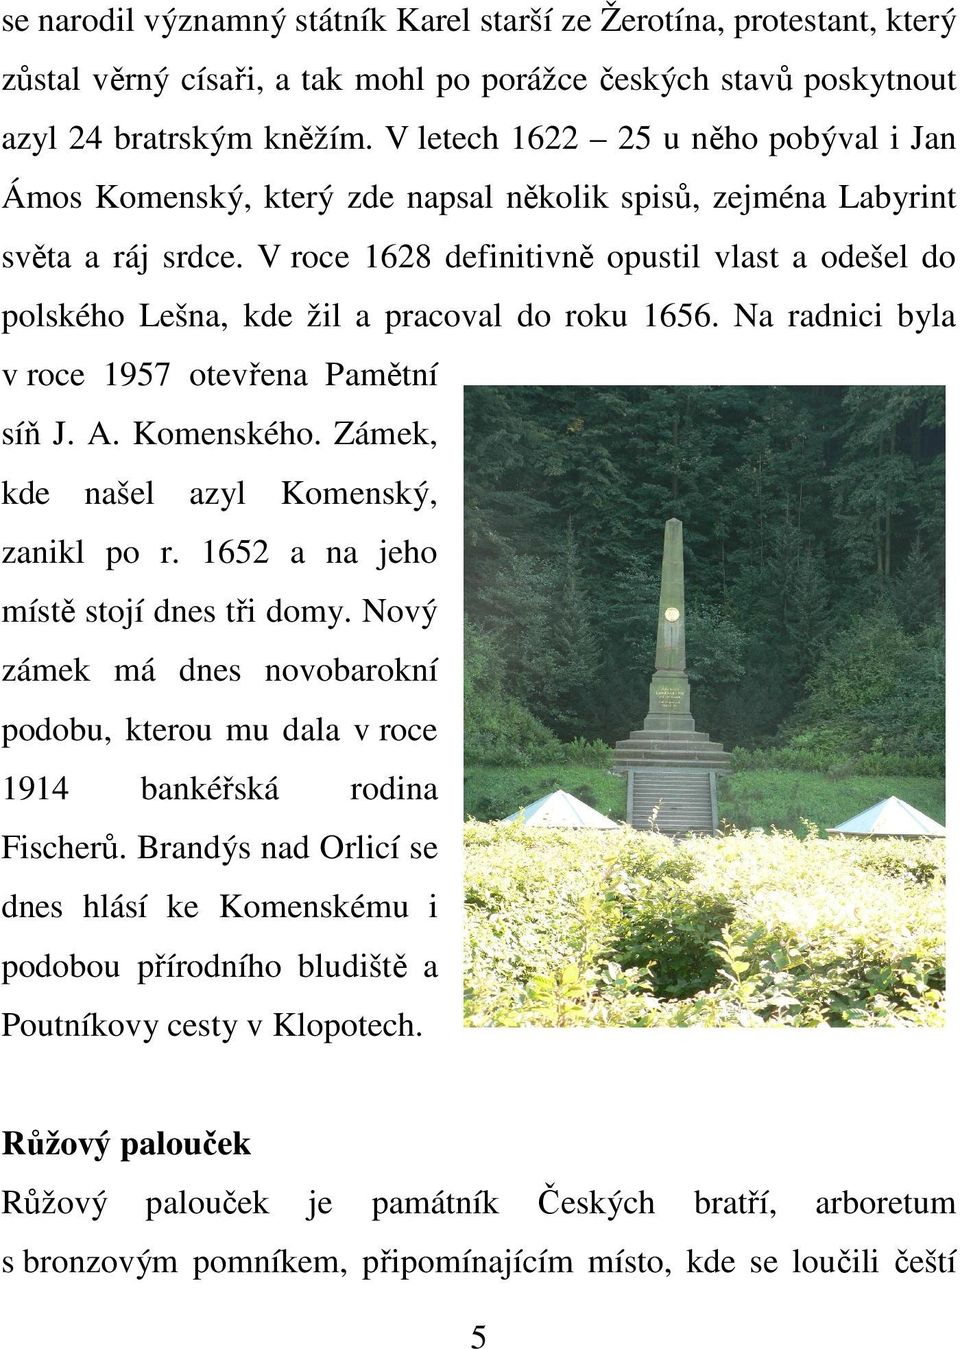 V roce 1628 definitivně opustil vlast a odešel do polského Lešna, kde žil a pracoval do roku 1656. Na radnici byla v roce 1957 otevřena Pamětní síň J. A. Komenského.